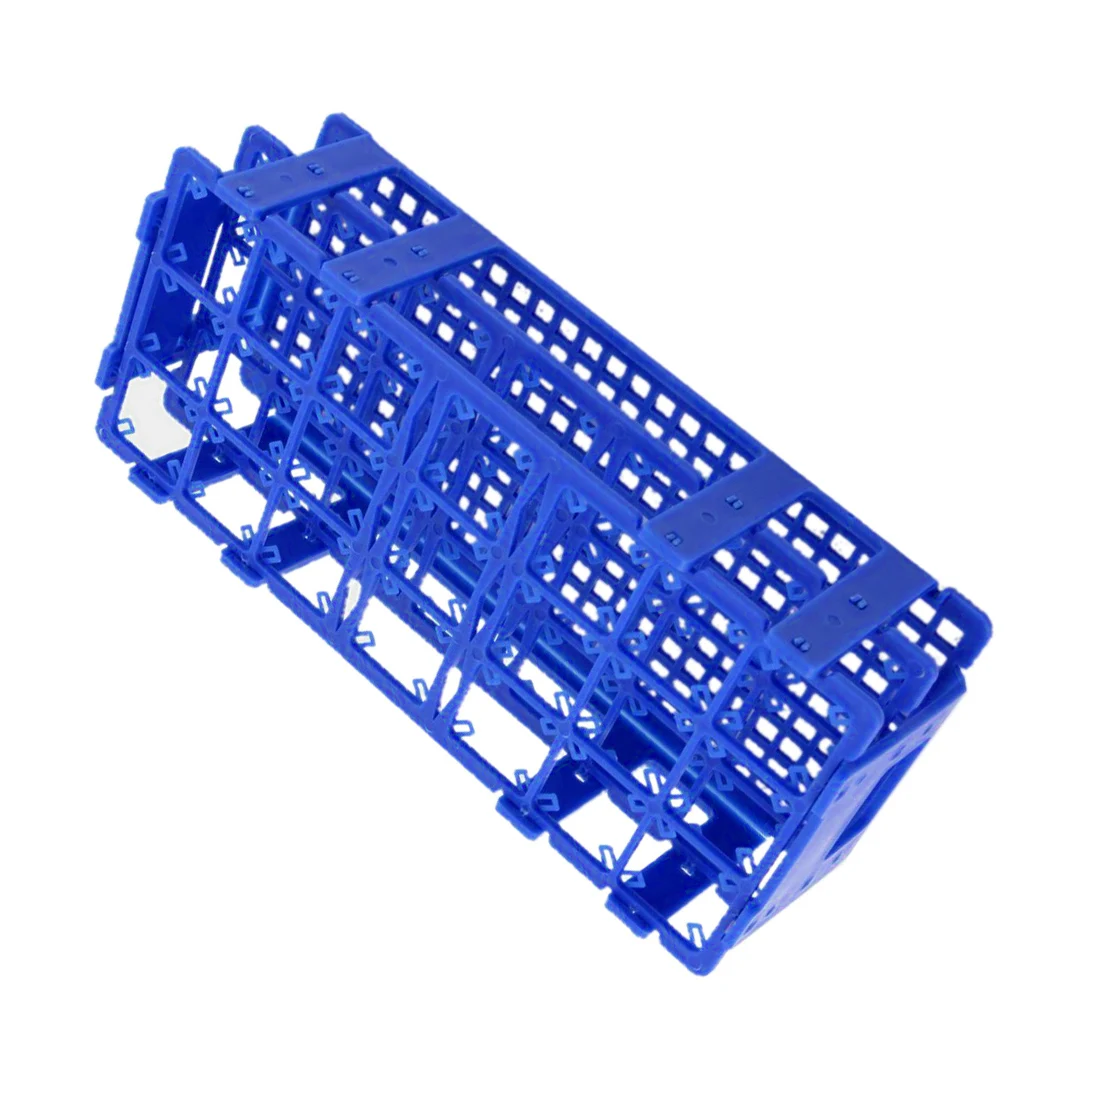 Горячий-синий пластик 21 отверстия коробка стойка держатель для 50 мл центрифуги трубы